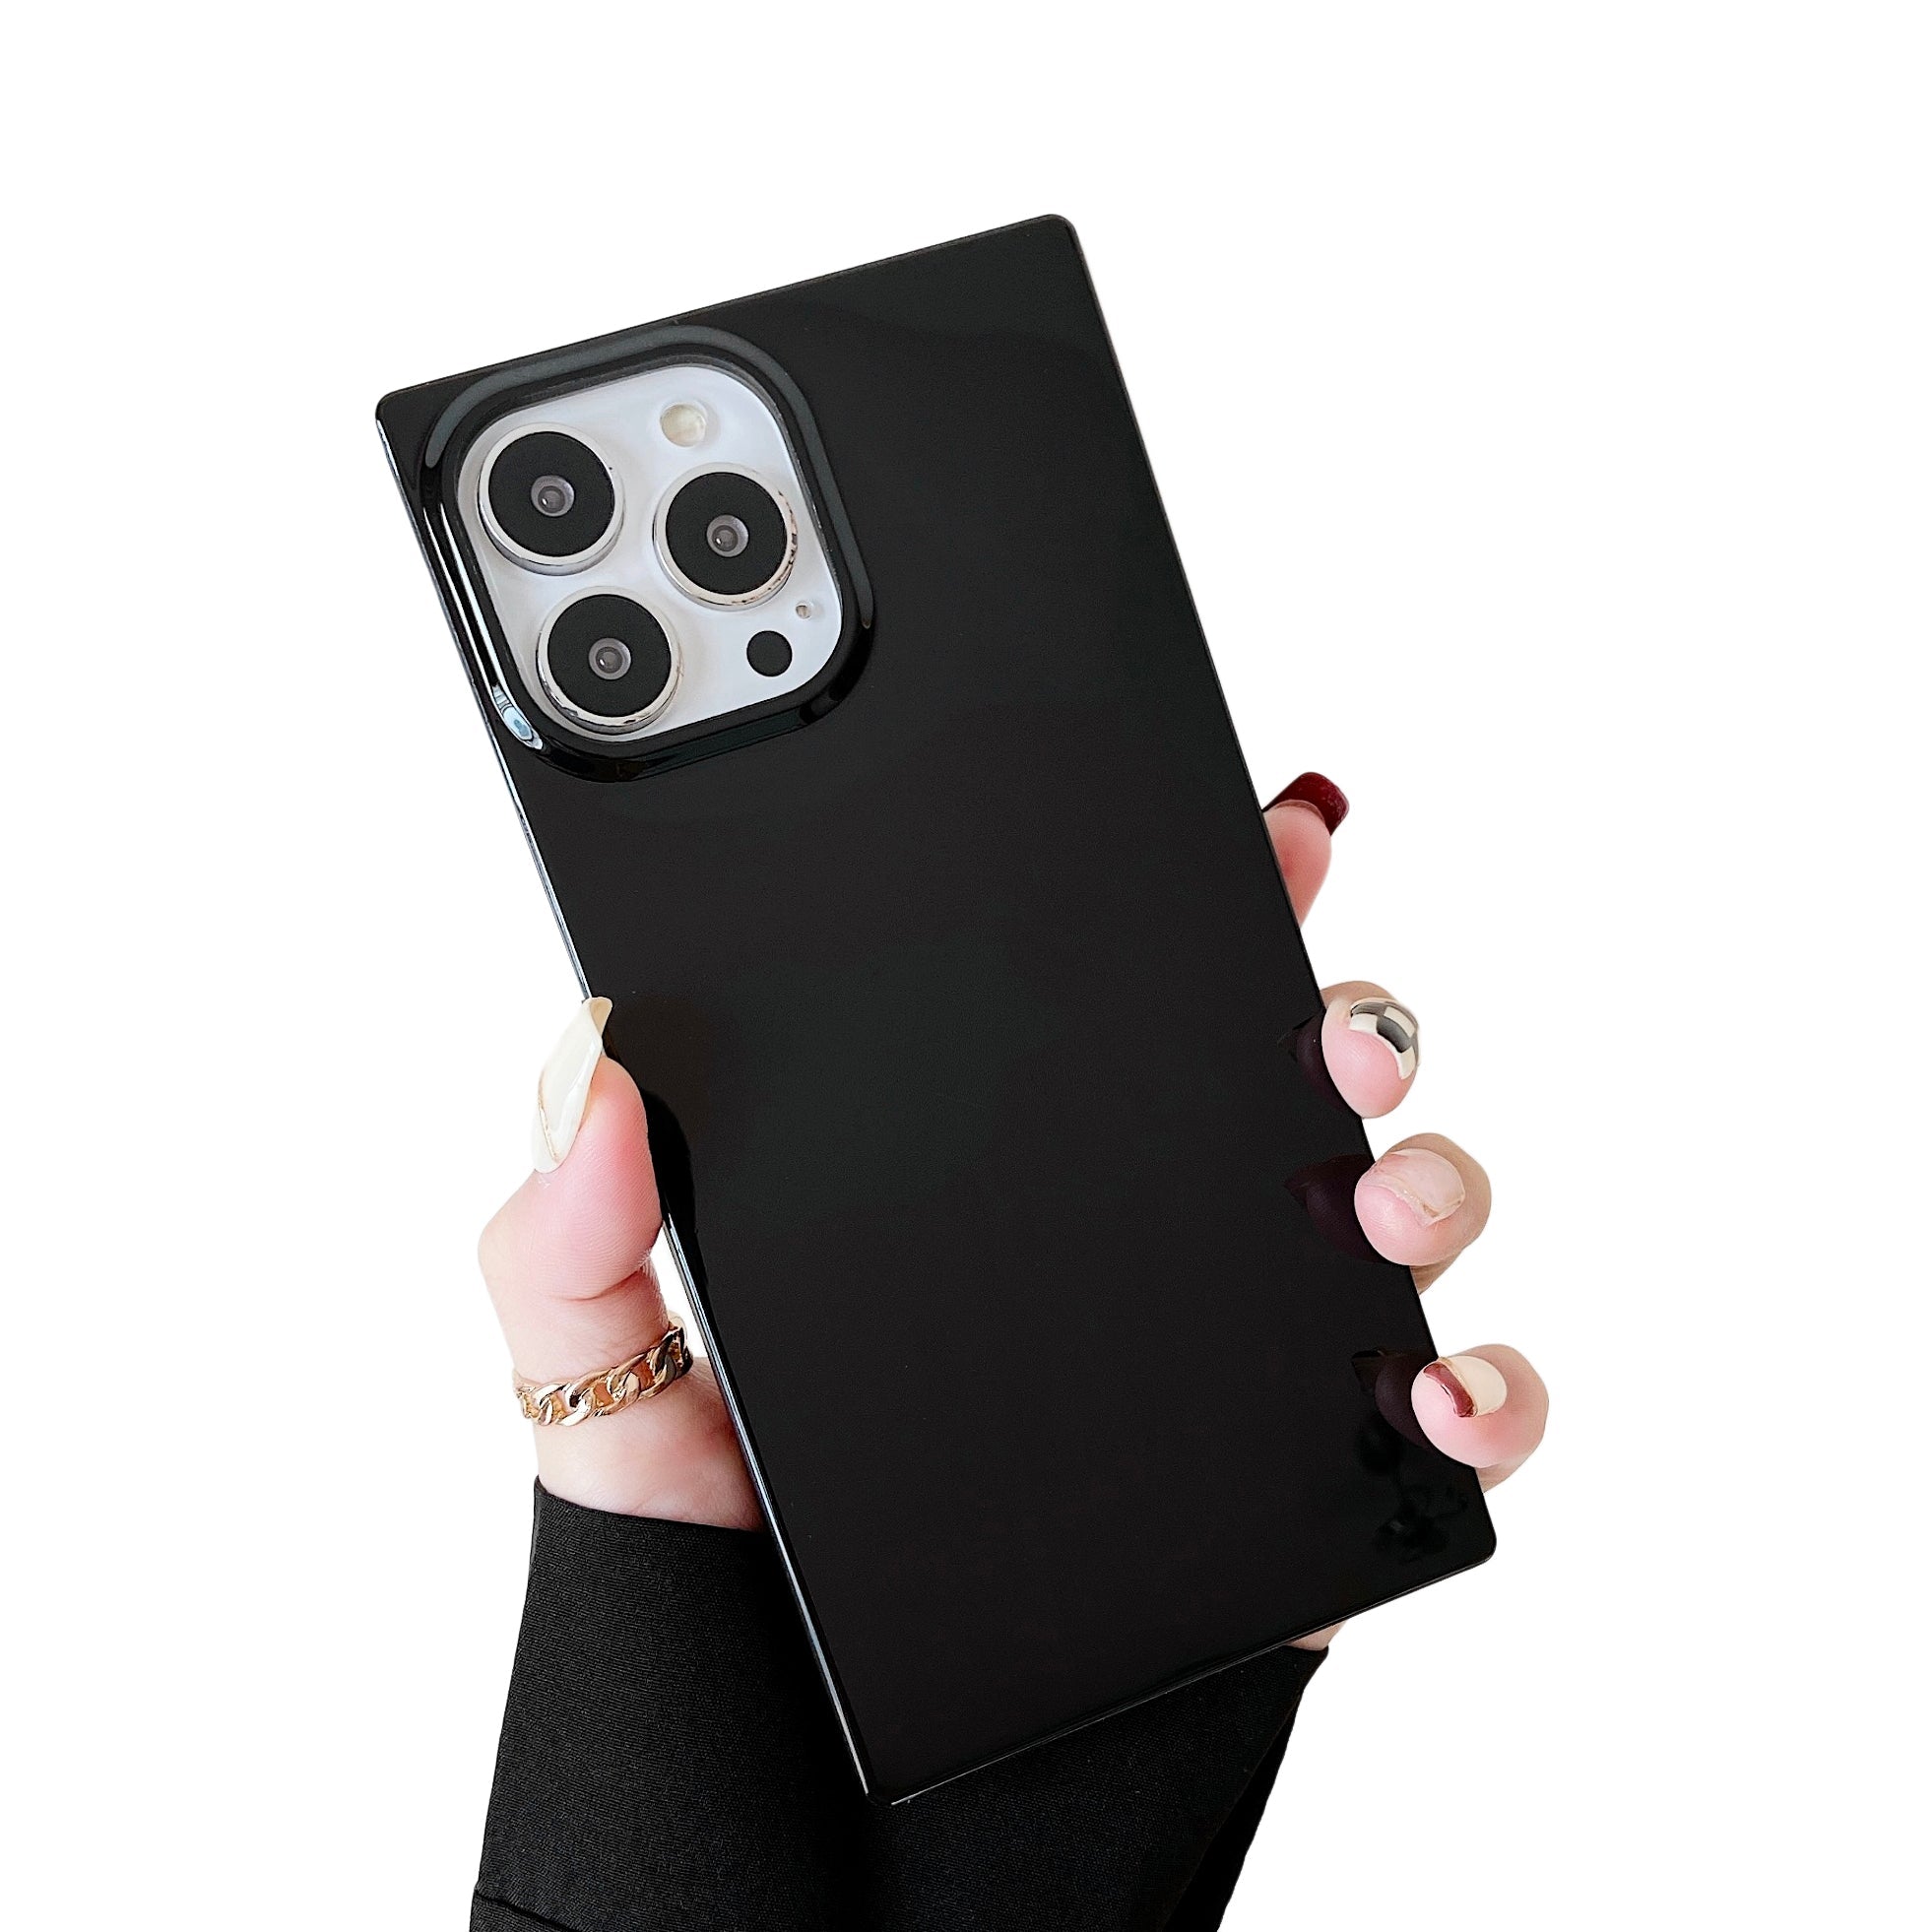 iPhone 12 Pro Max Case Square Neutral Plain Color (Black)